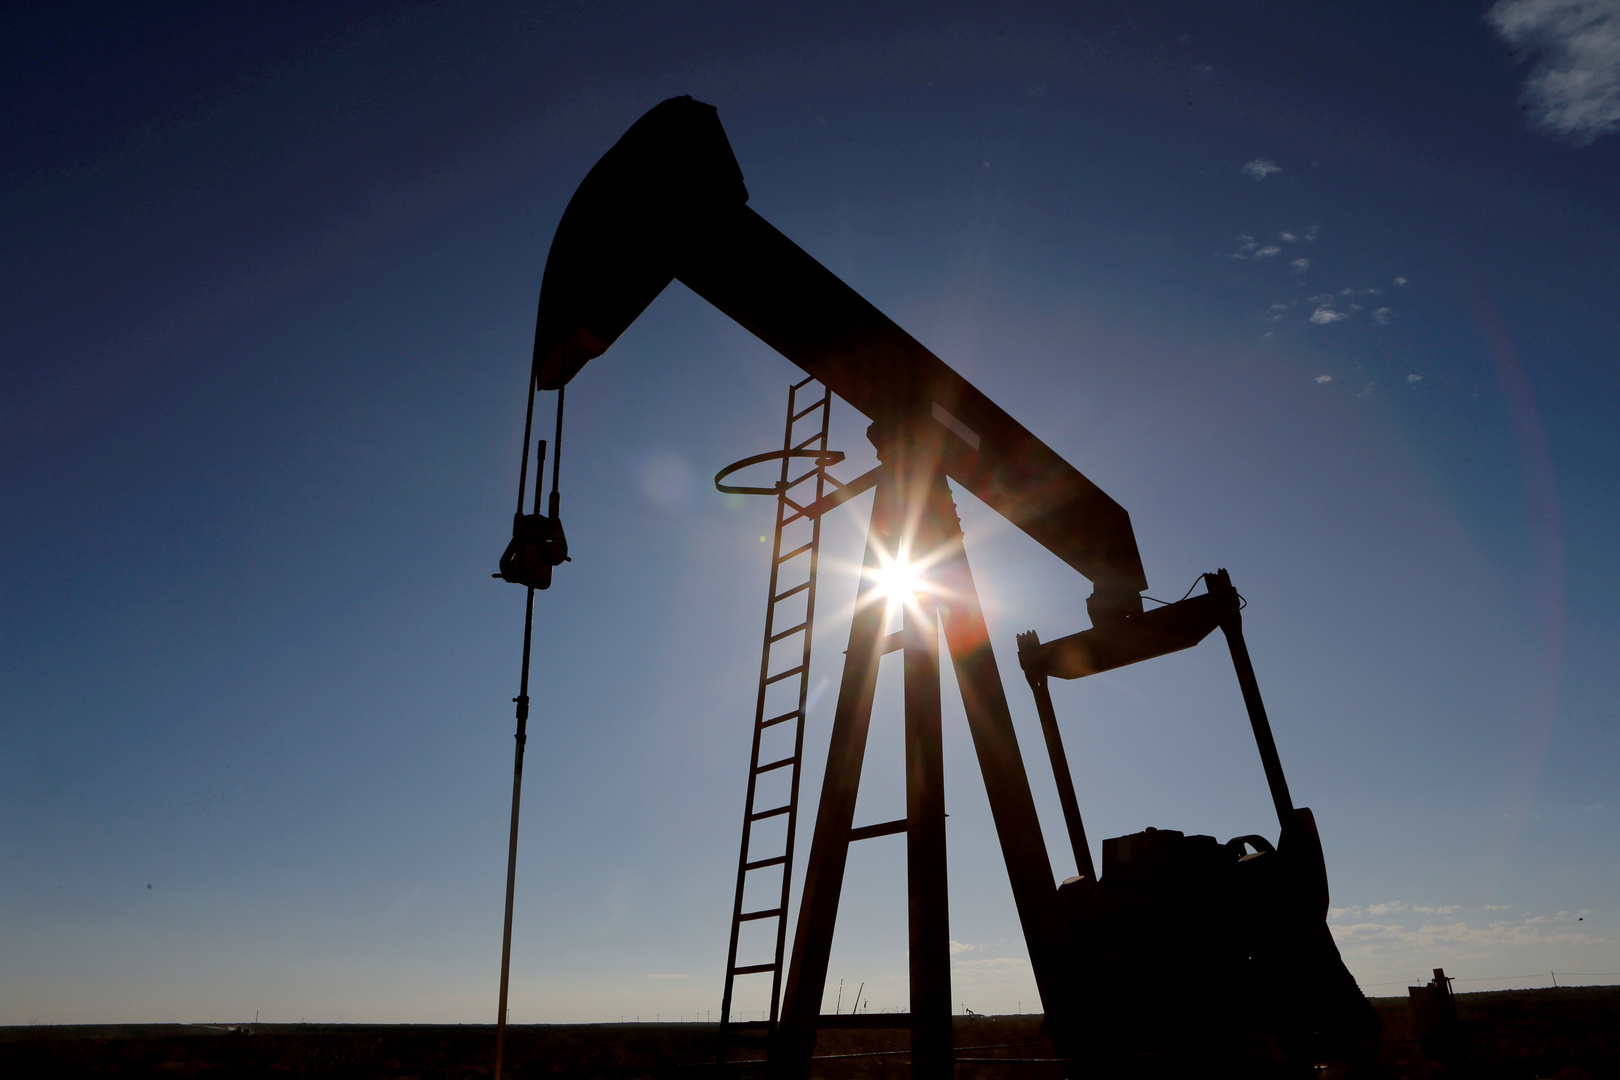  كومرتس بنك: مخاوف الطلب على النفط مبالغ فيها وسنشهد نقصًا بالإمدادات